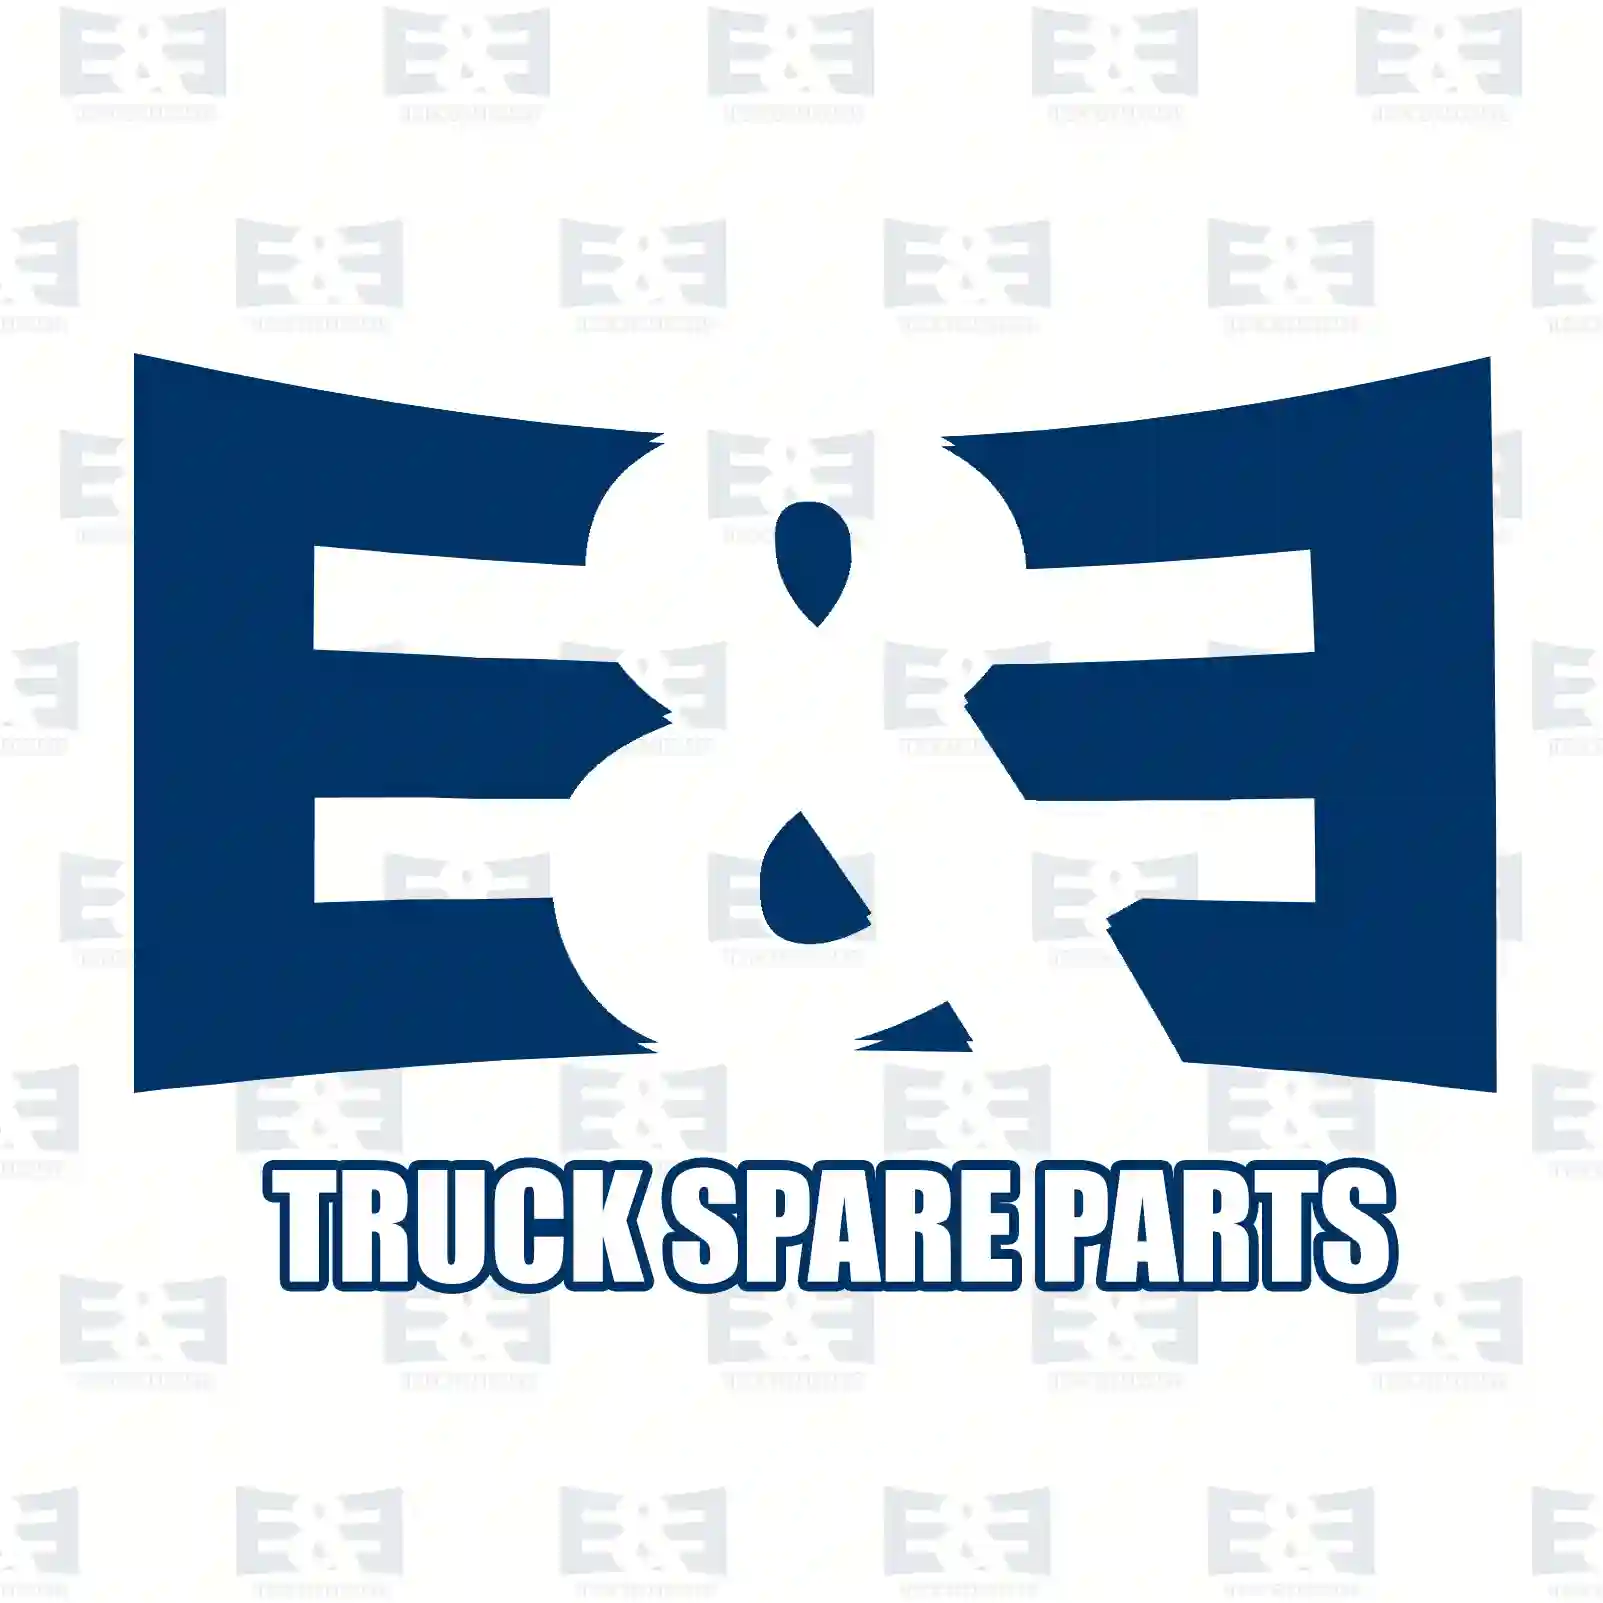 Compressor, air conditioning, oil filled, 2E2276560, 2026699, GK31-19D629-CD ||  2E2276560 E&E Truck Spare Parts | Truck Spare Parts, Auotomotive Spare Parts Compressor, air conditioning, oil filled, 2E2276560, 2026699, GK31-19D629-CD ||  2E2276560 E&E Truck Spare Parts | Truck Spare Parts, Auotomotive Spare Parts